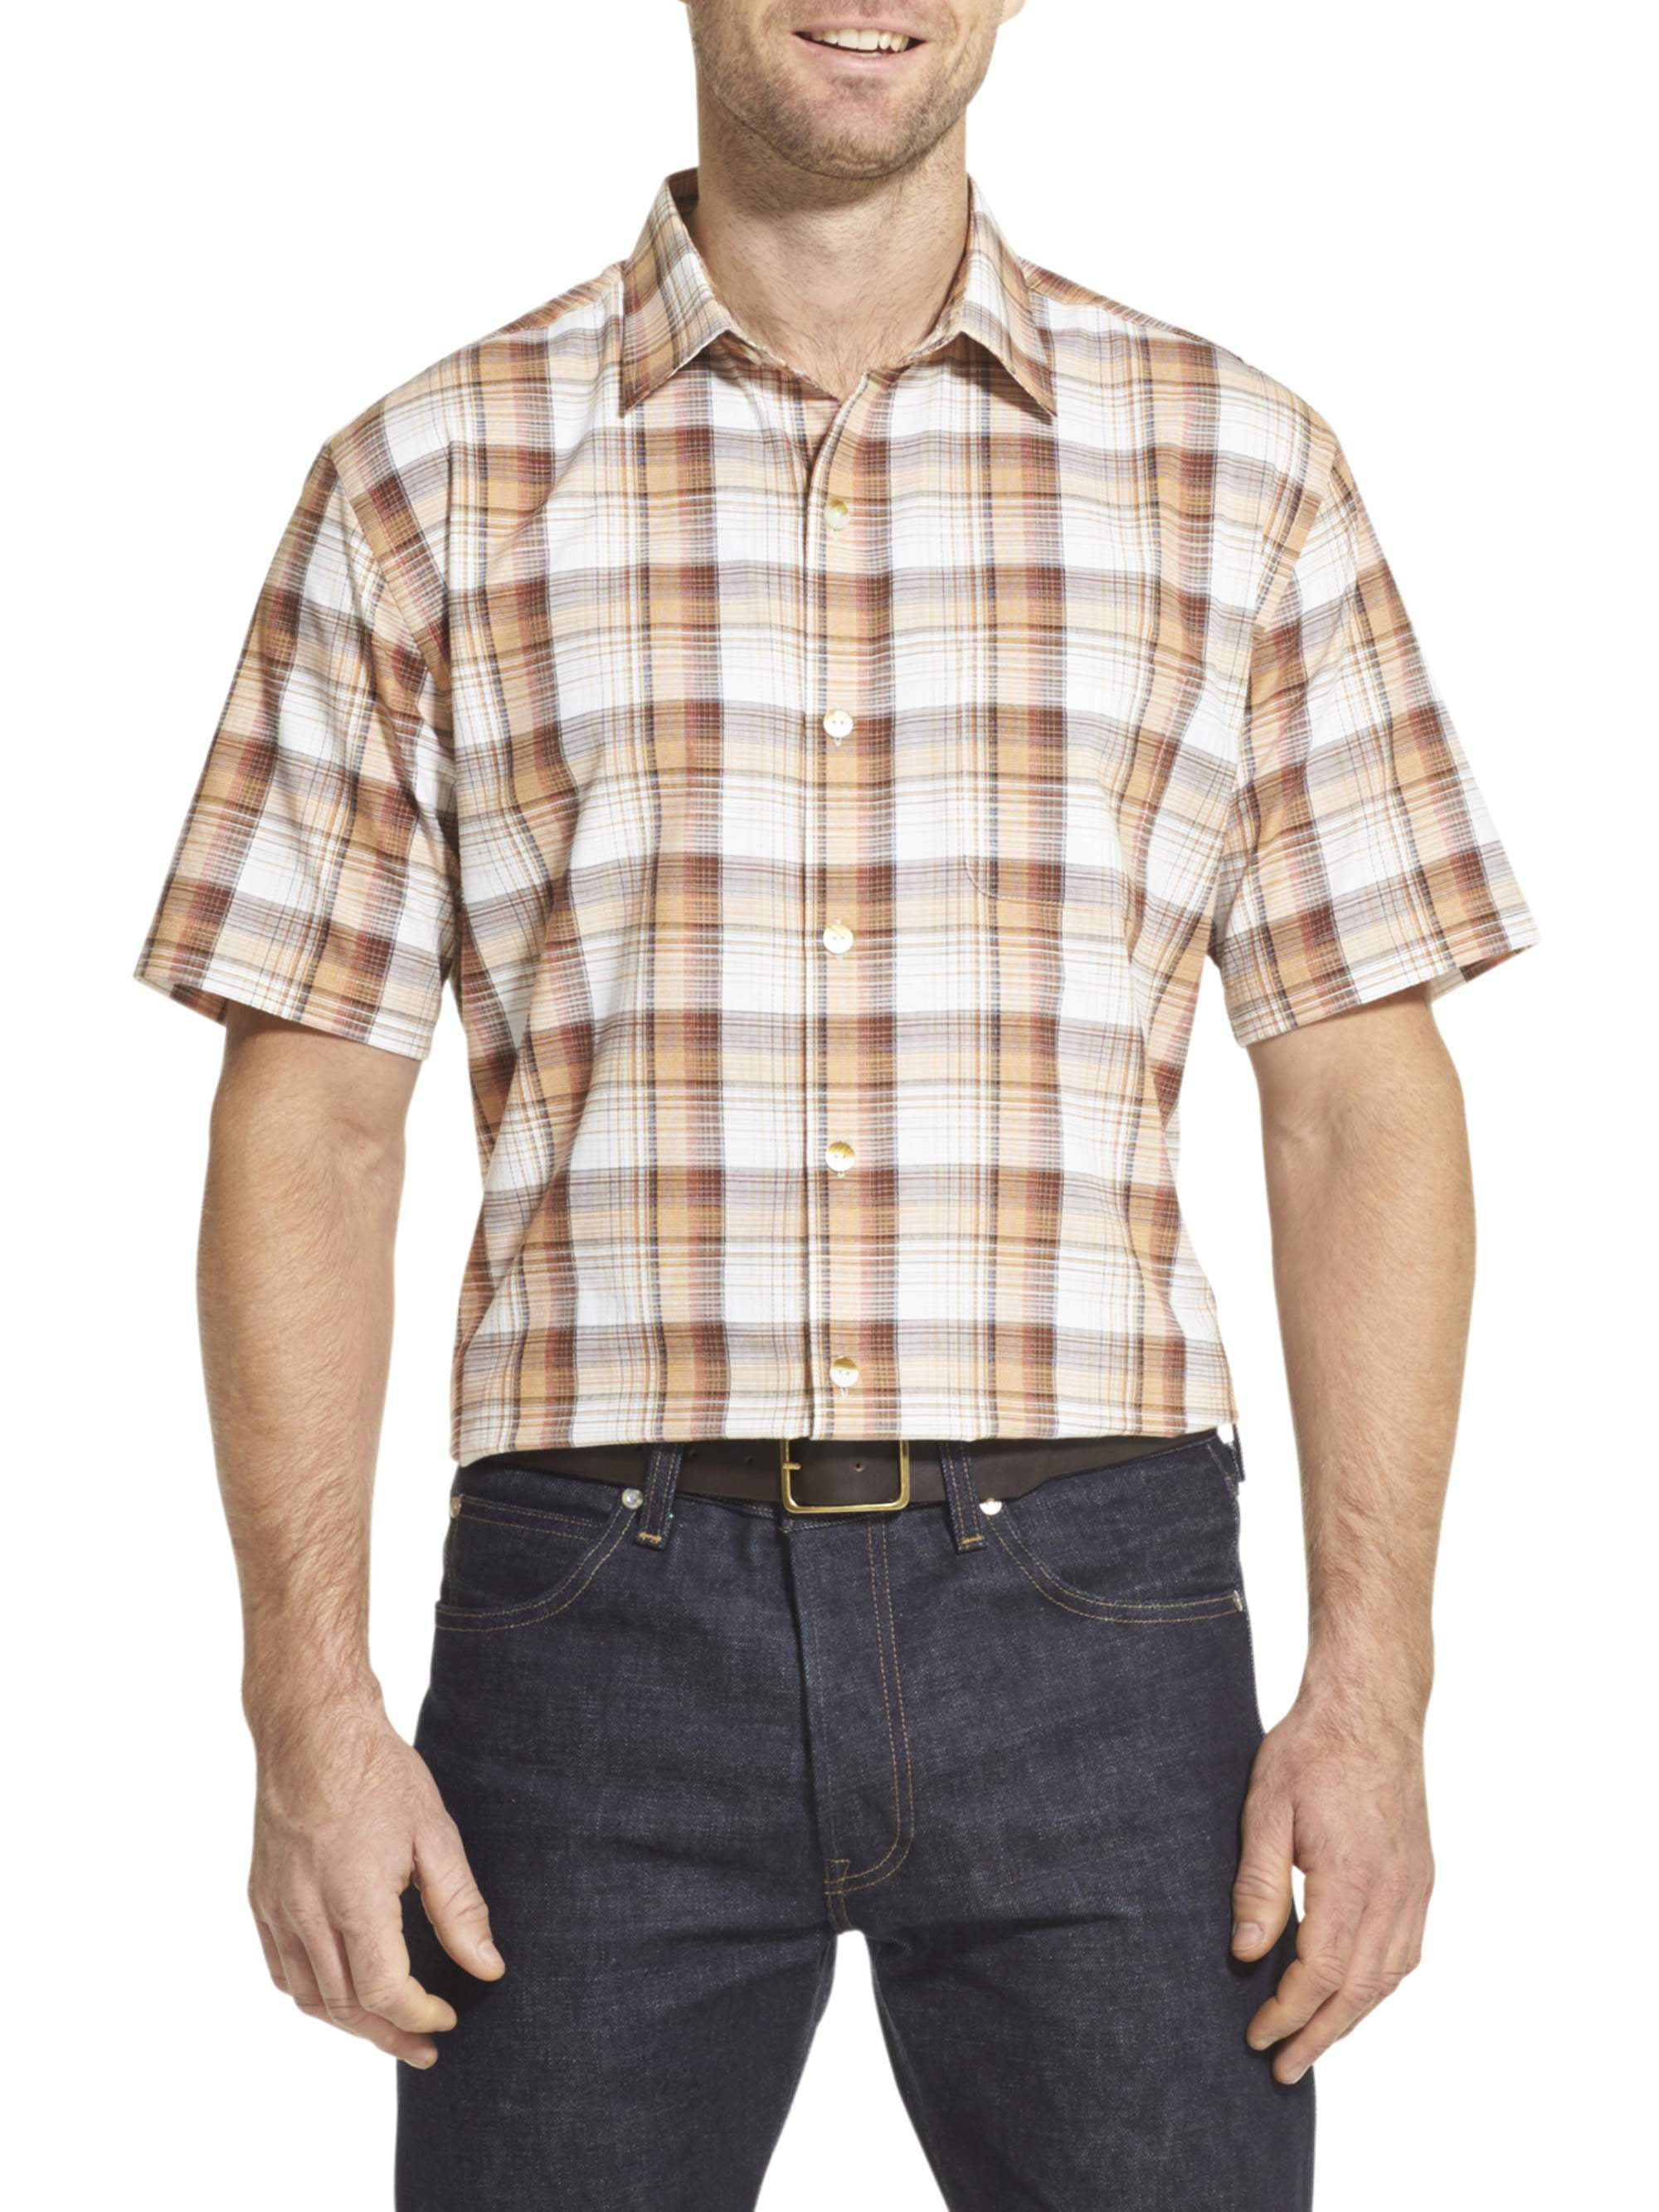 Van Heusen Men's Air Texture Short Sleeve Button Down Shirt - Walmart.com